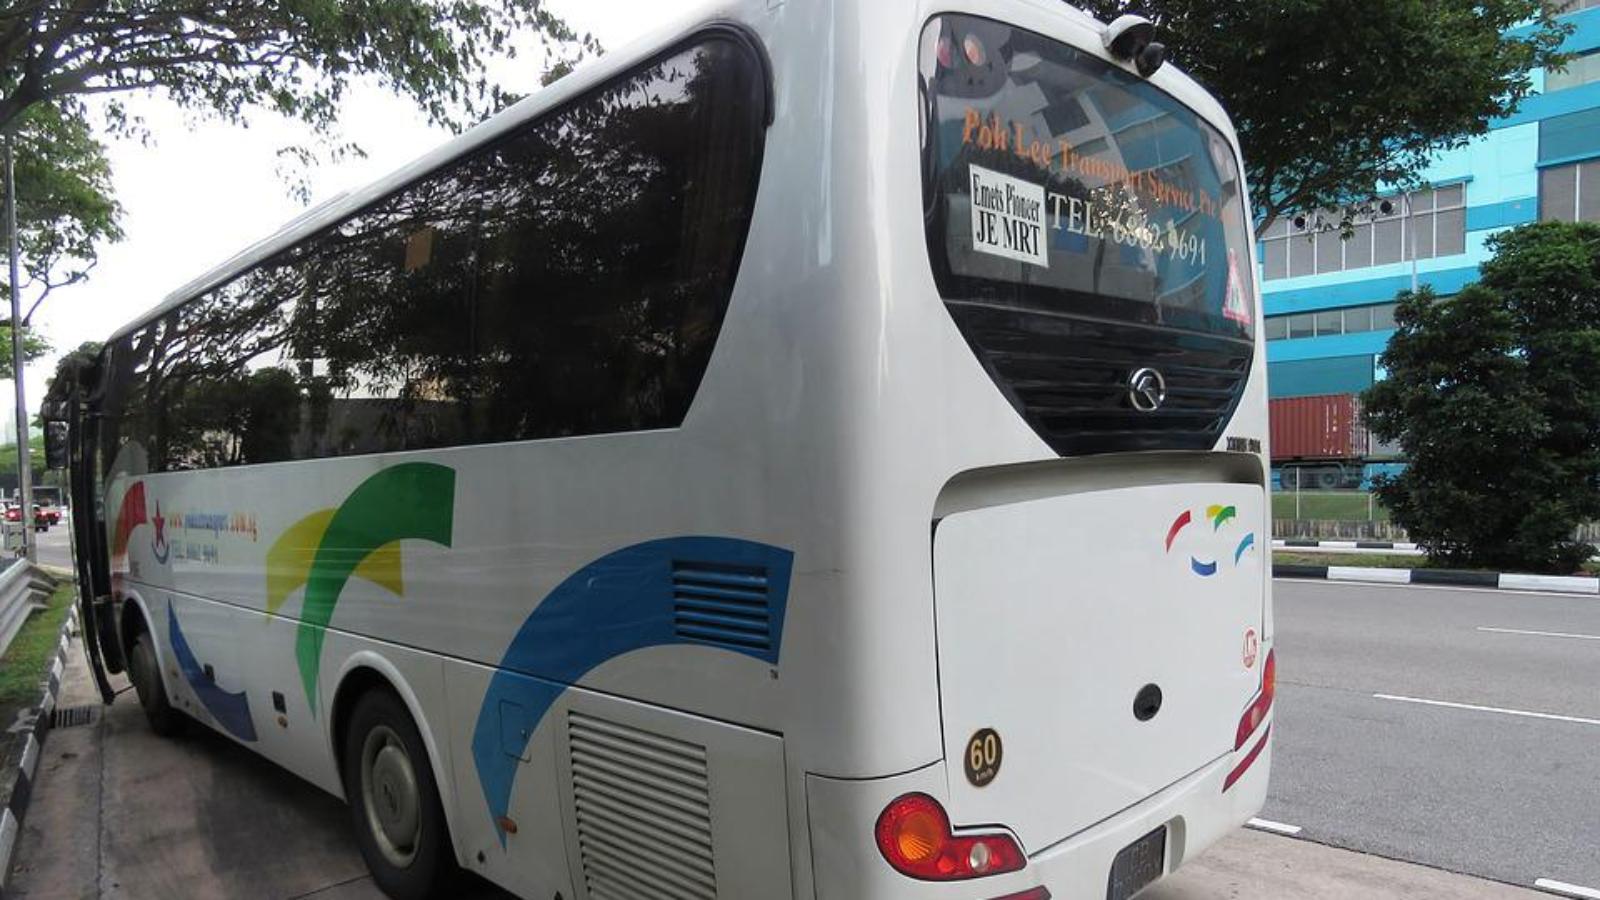 Accesso bus turistici al centro storico